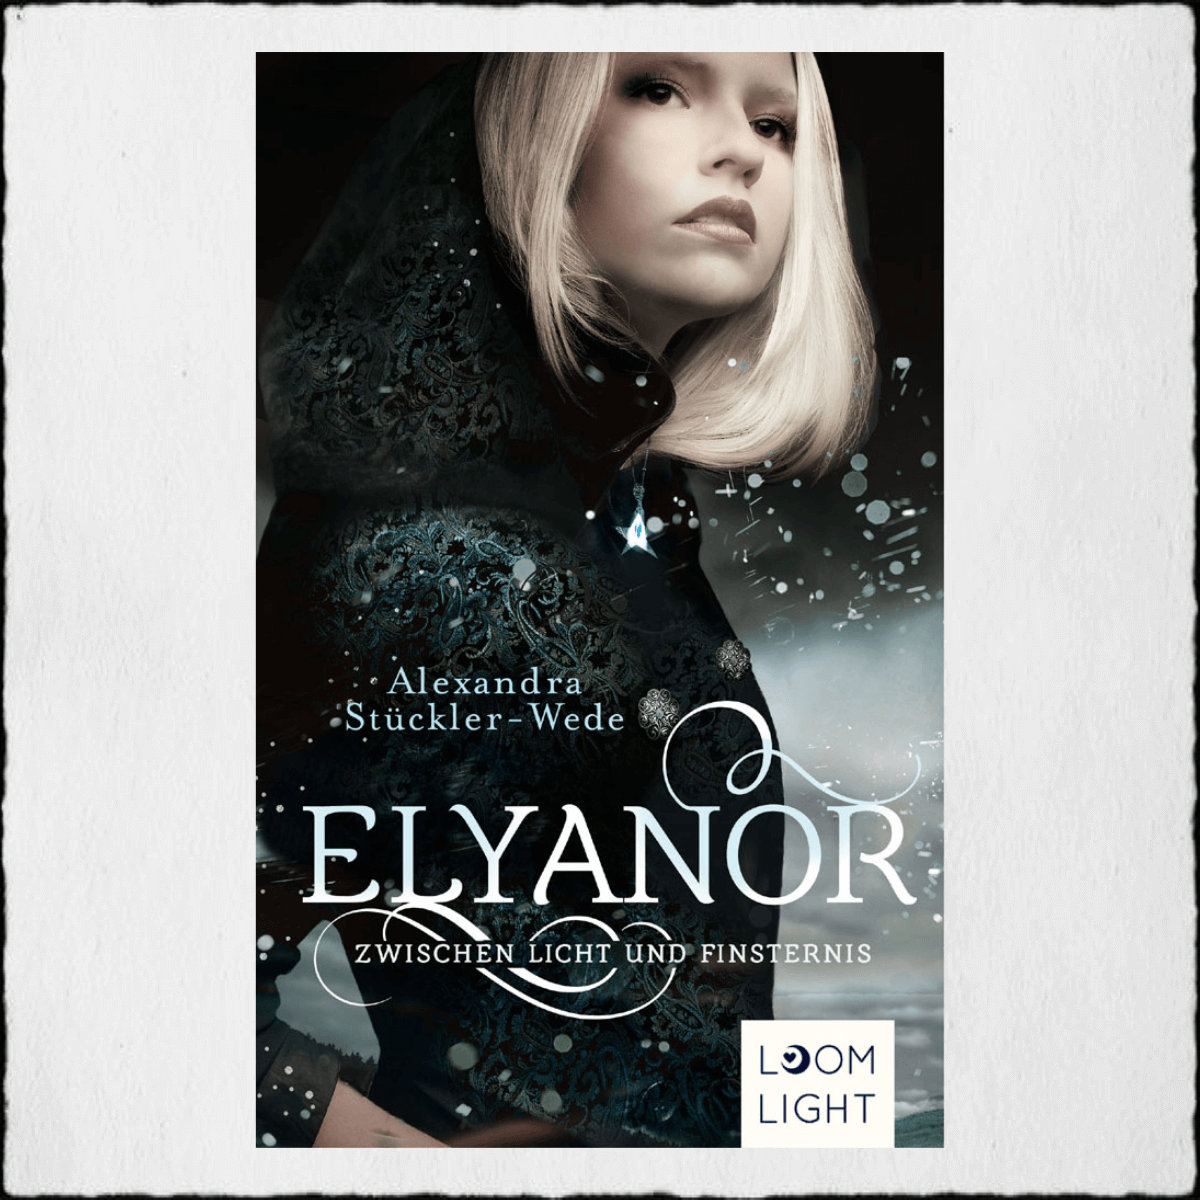 Alexandra Stückler-Wede - "Elyanor 1 - Zwischen Licht und Dunkel" © 2019 loomlight (Planet! by Thienemann Esslinger Verlag GmbH)